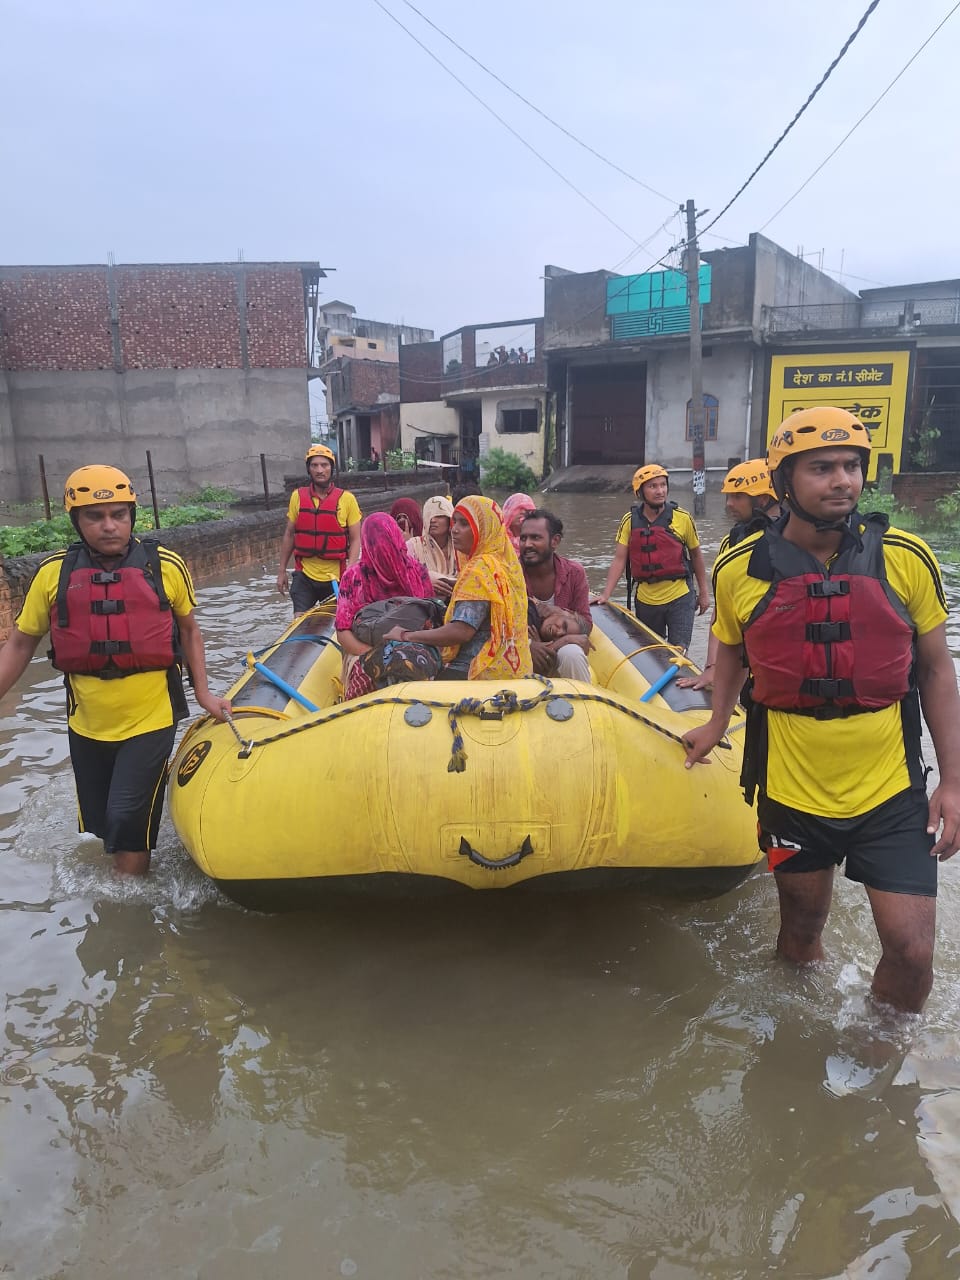 Flood in laksarHaridwar, हरिद्वार- लक्सर में सलोनी नदी का बंधा टूटने से बाढ़ की स्थिती कई लोग गहरे पानी में फंसे।